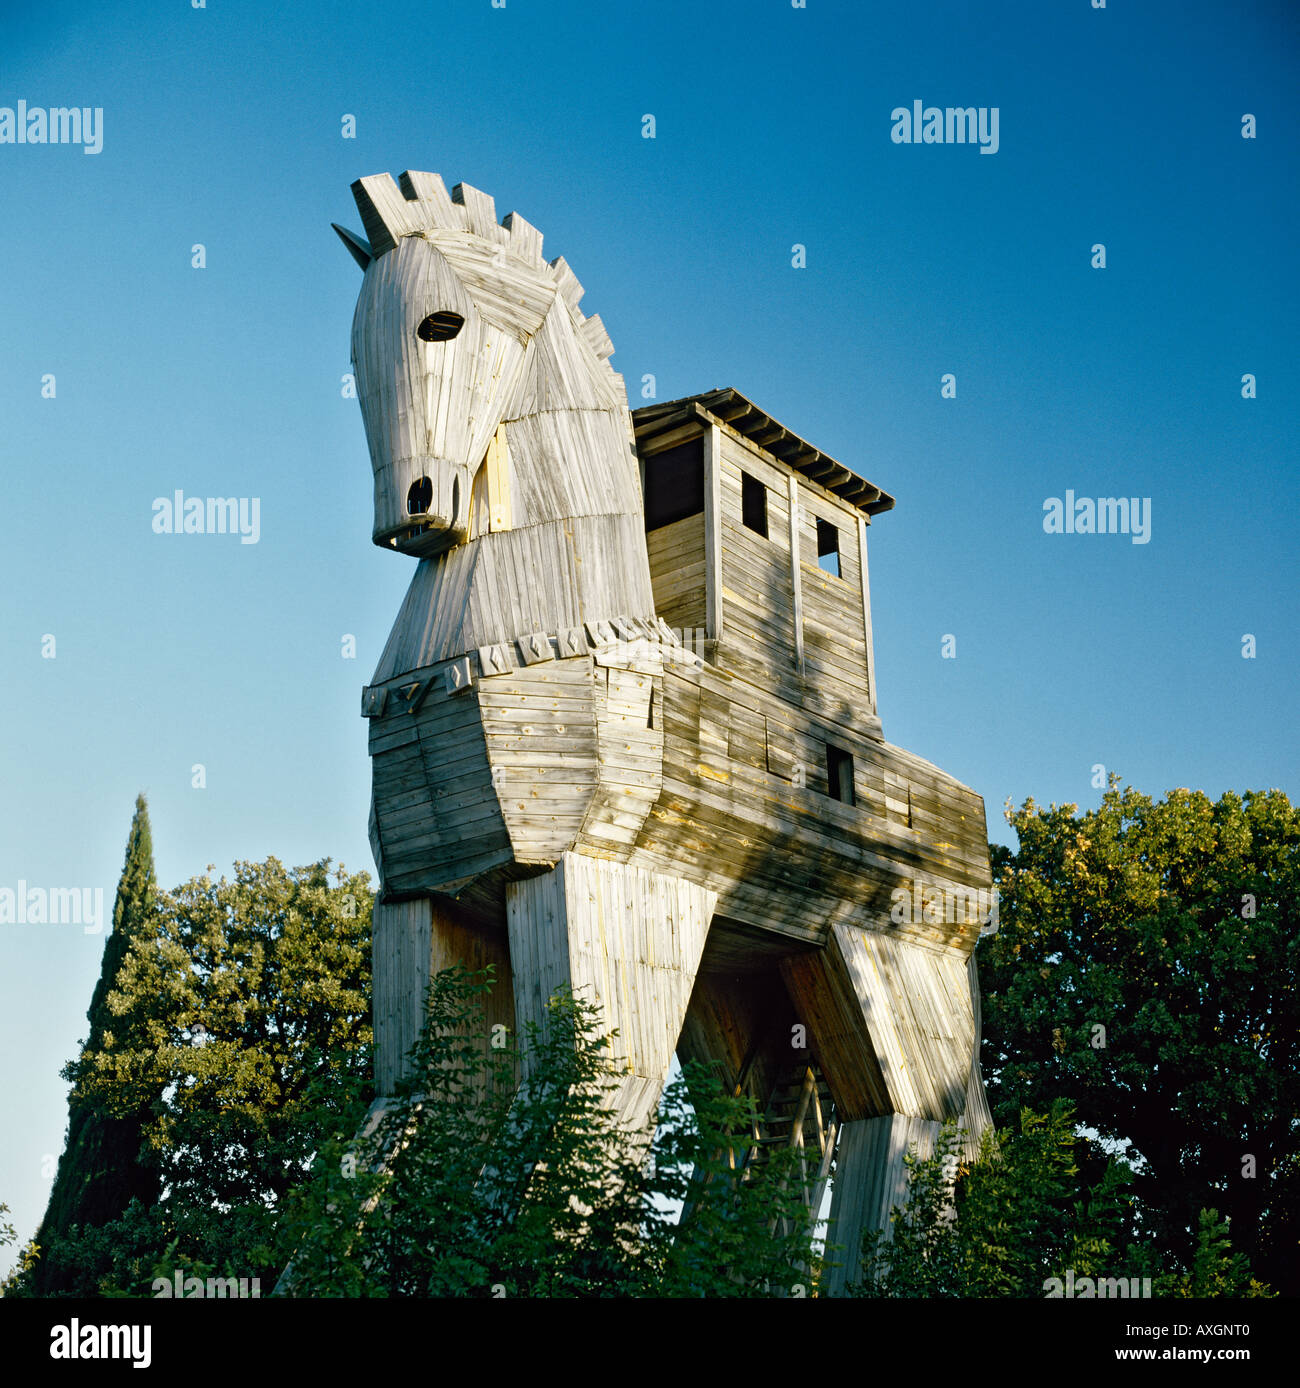 Réplique du célèbre cheval de Troie en bois que l'on croit être un souvenir d'un décor de cinéma en Turquie Banque D'Images